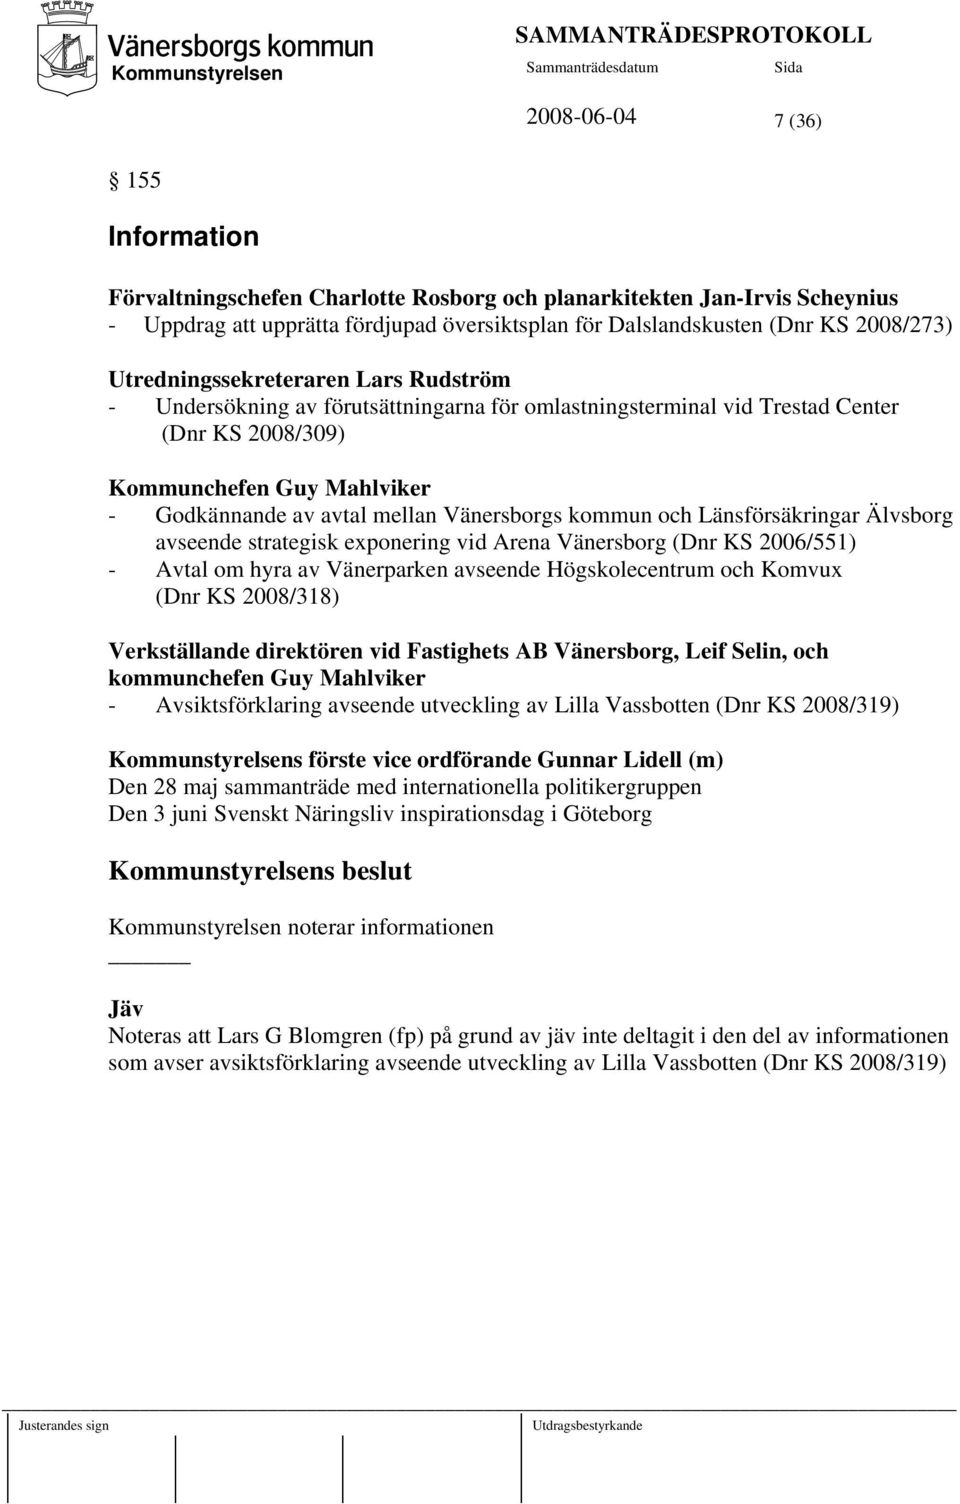 Vänersborgs kommun och Länsförsäkringar Älvsborg avseende strategisk exponering vid Arena Vänersborg (Dnr KS 2006/551) - Avtal om hyra av Vänerparken avseende Högskolecentrum och Komvux (Dnr KS